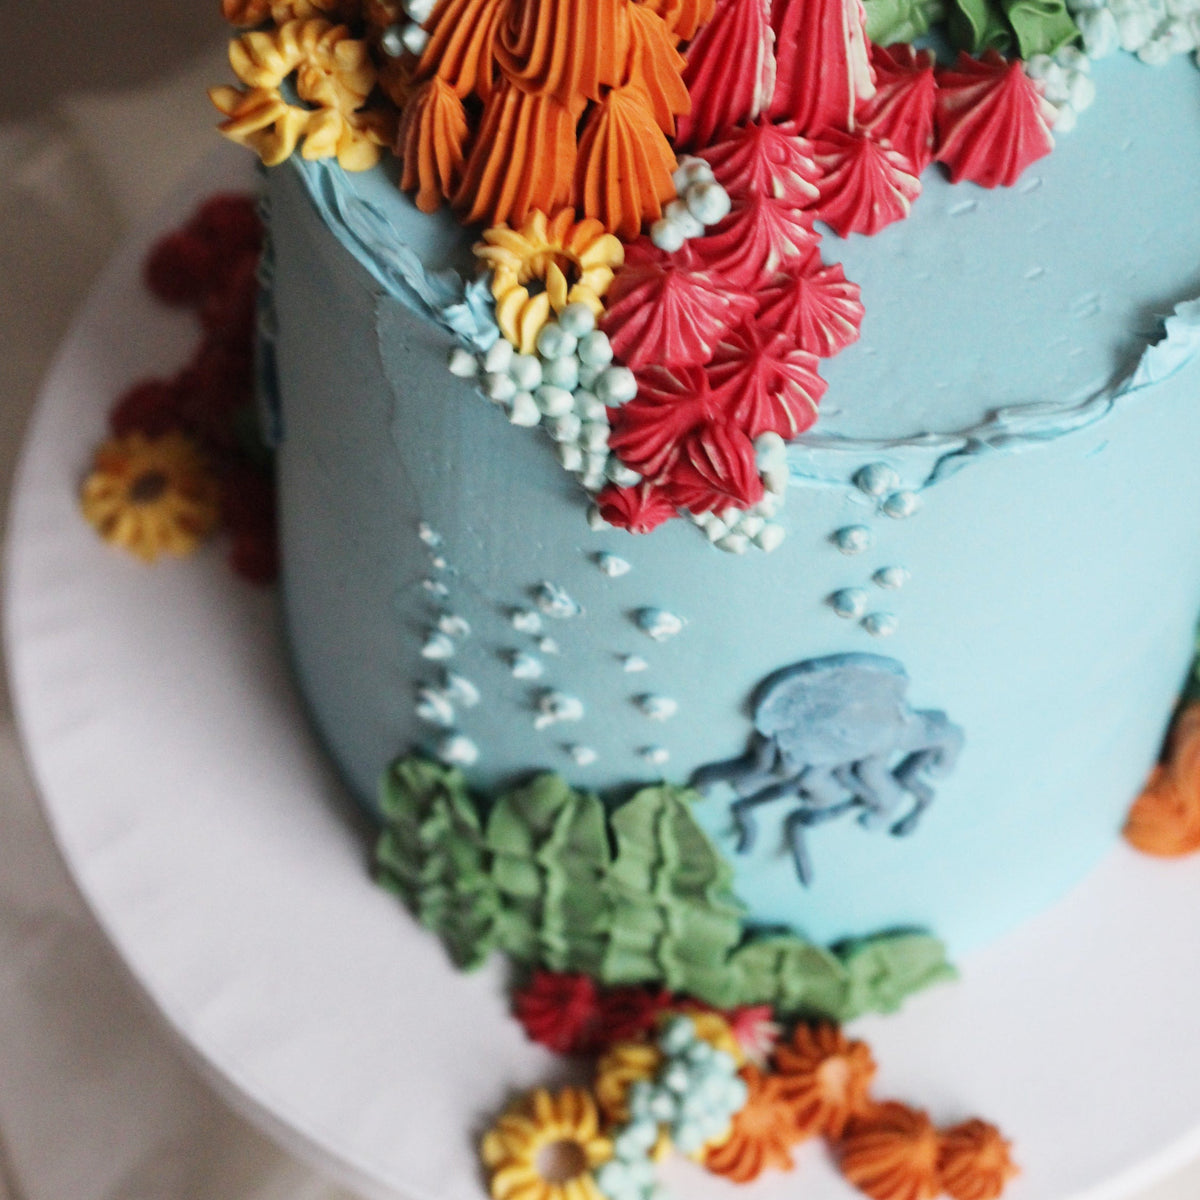 Underwater-inspired cake for ocean lovers.